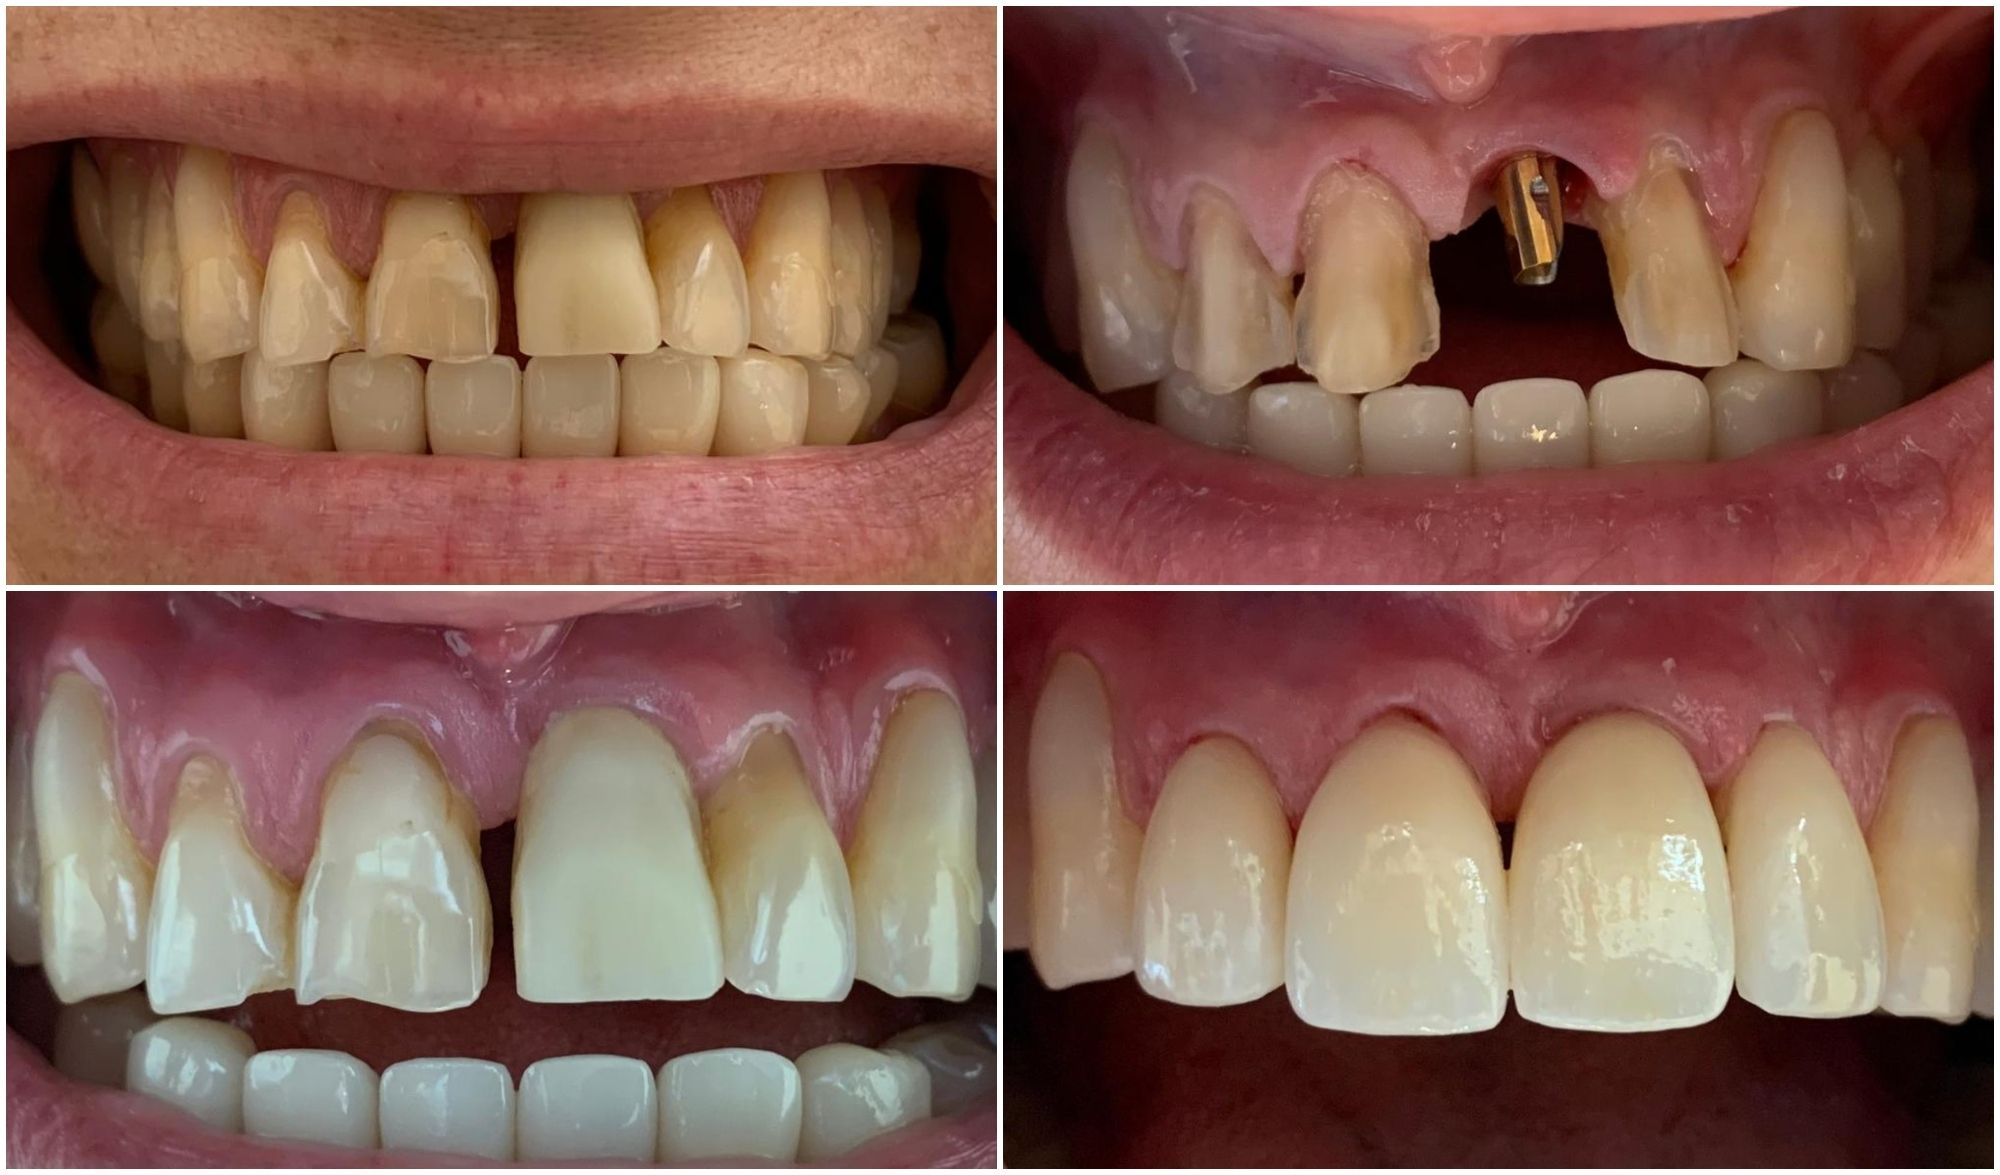 Antes y después de los implantes dentales